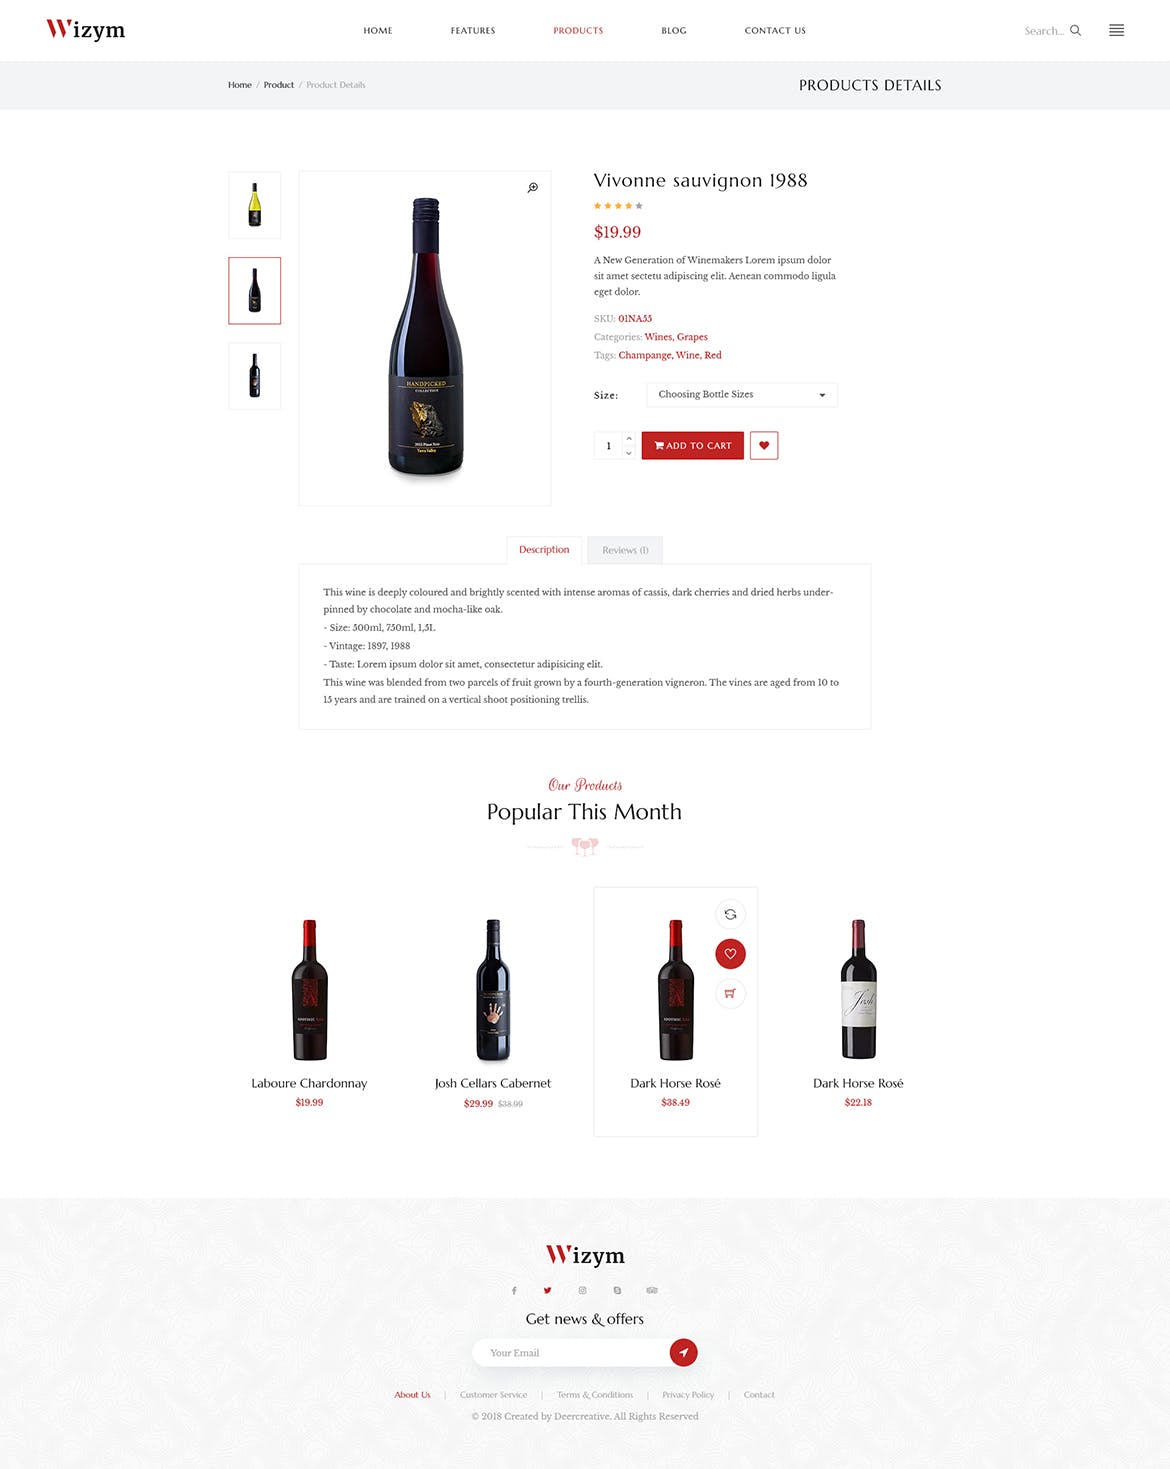 葡萄酒品牌网站设计PSD模板 Wizym | Wine & Winery PSD Template插图(7)